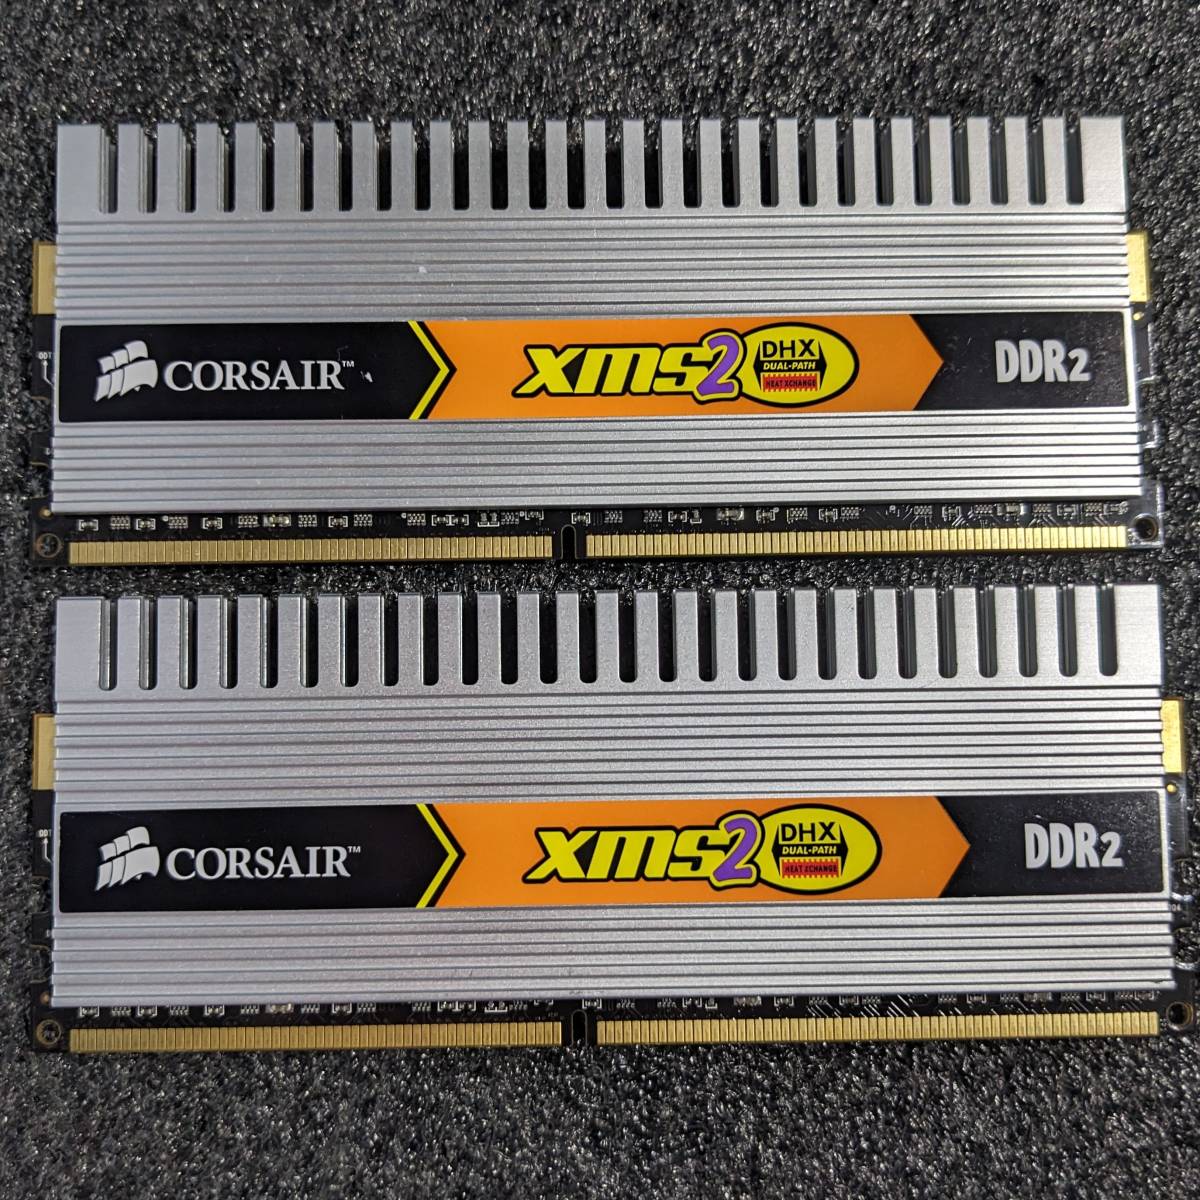 【中古】DDR2メモリ 4GB(2GB2枚組) Corsair TWIN2X4096-6400C4DHX [DDR2-800 PC2-6400]